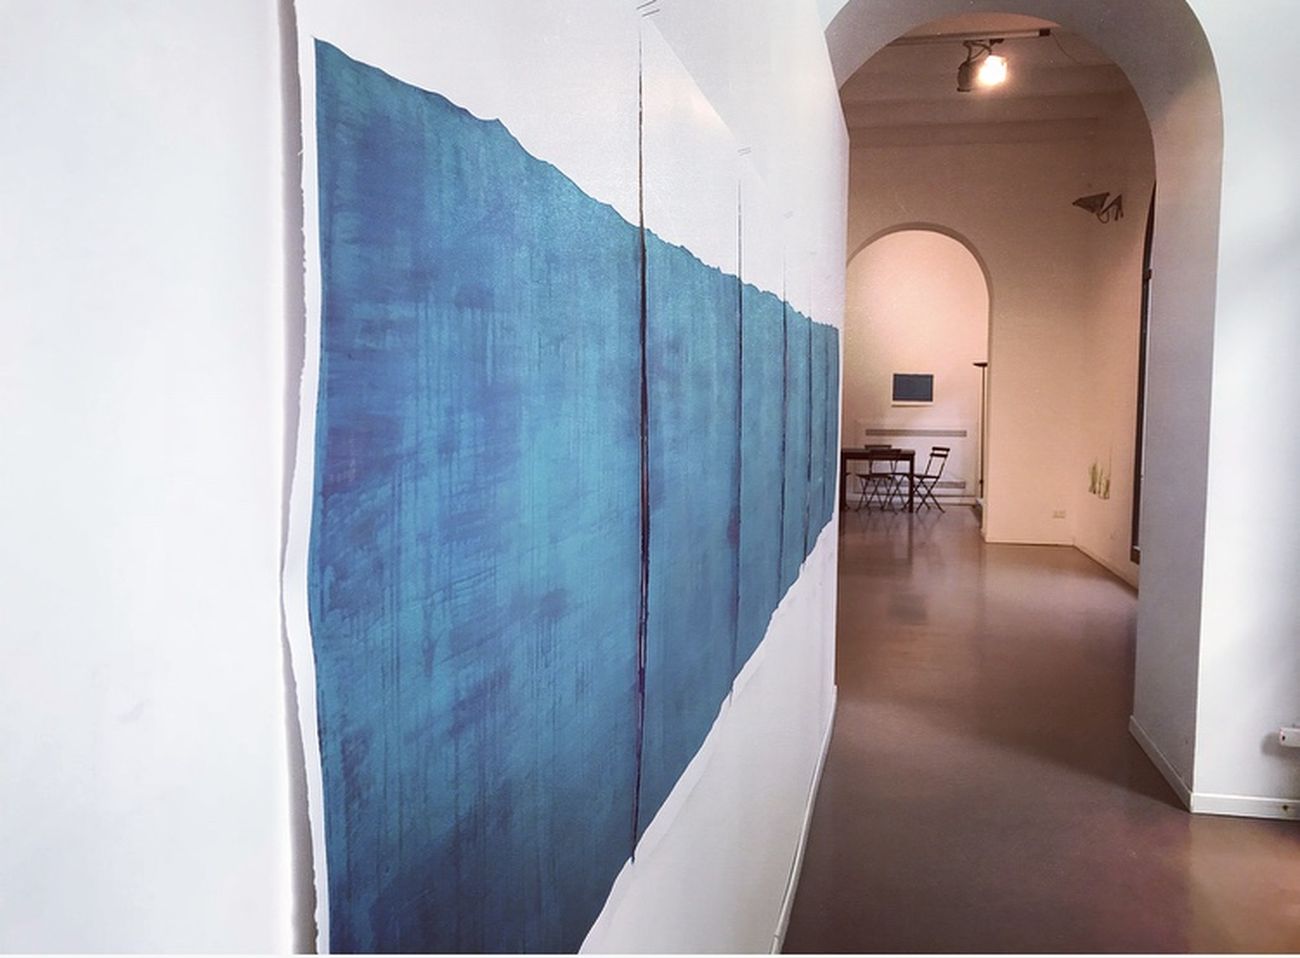 Rui Inácio. Ó mar de Deus amansai. Exhibition view at Galleria Nuvole, Palermo 2017